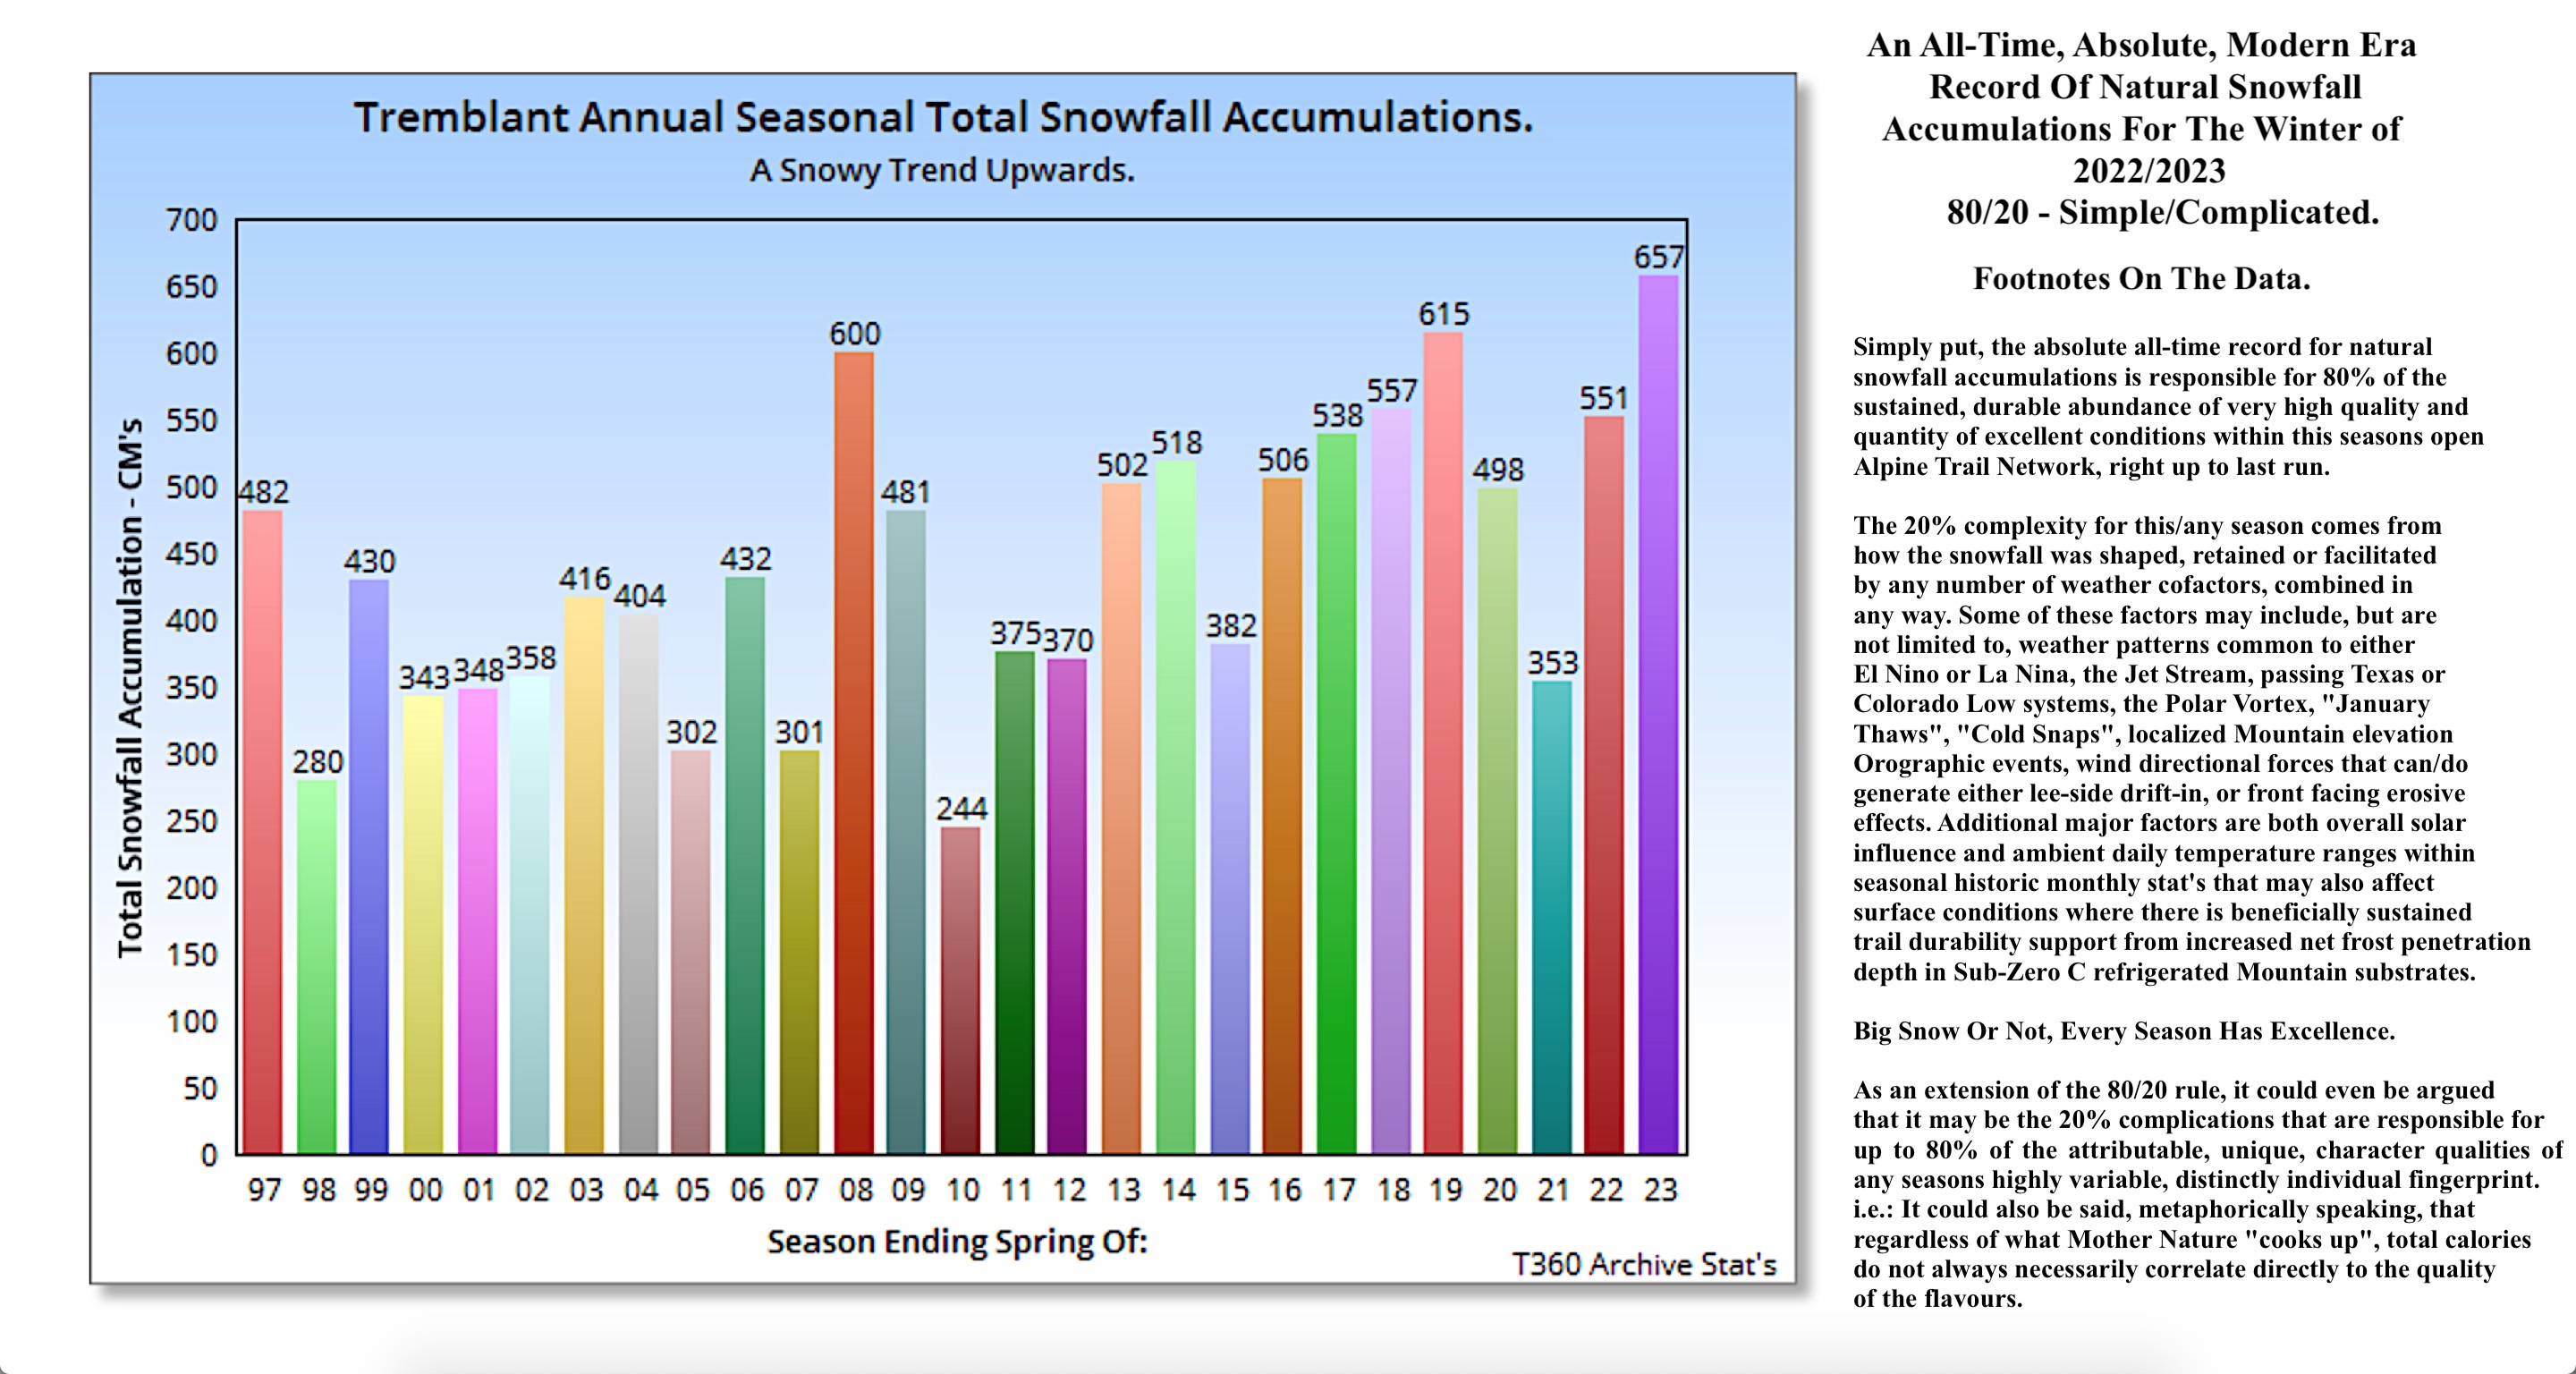 6.9.23.Season.2022.2023.27.Year.Historic.Snowfall.Statistics.With.Footnotes.a.jpg